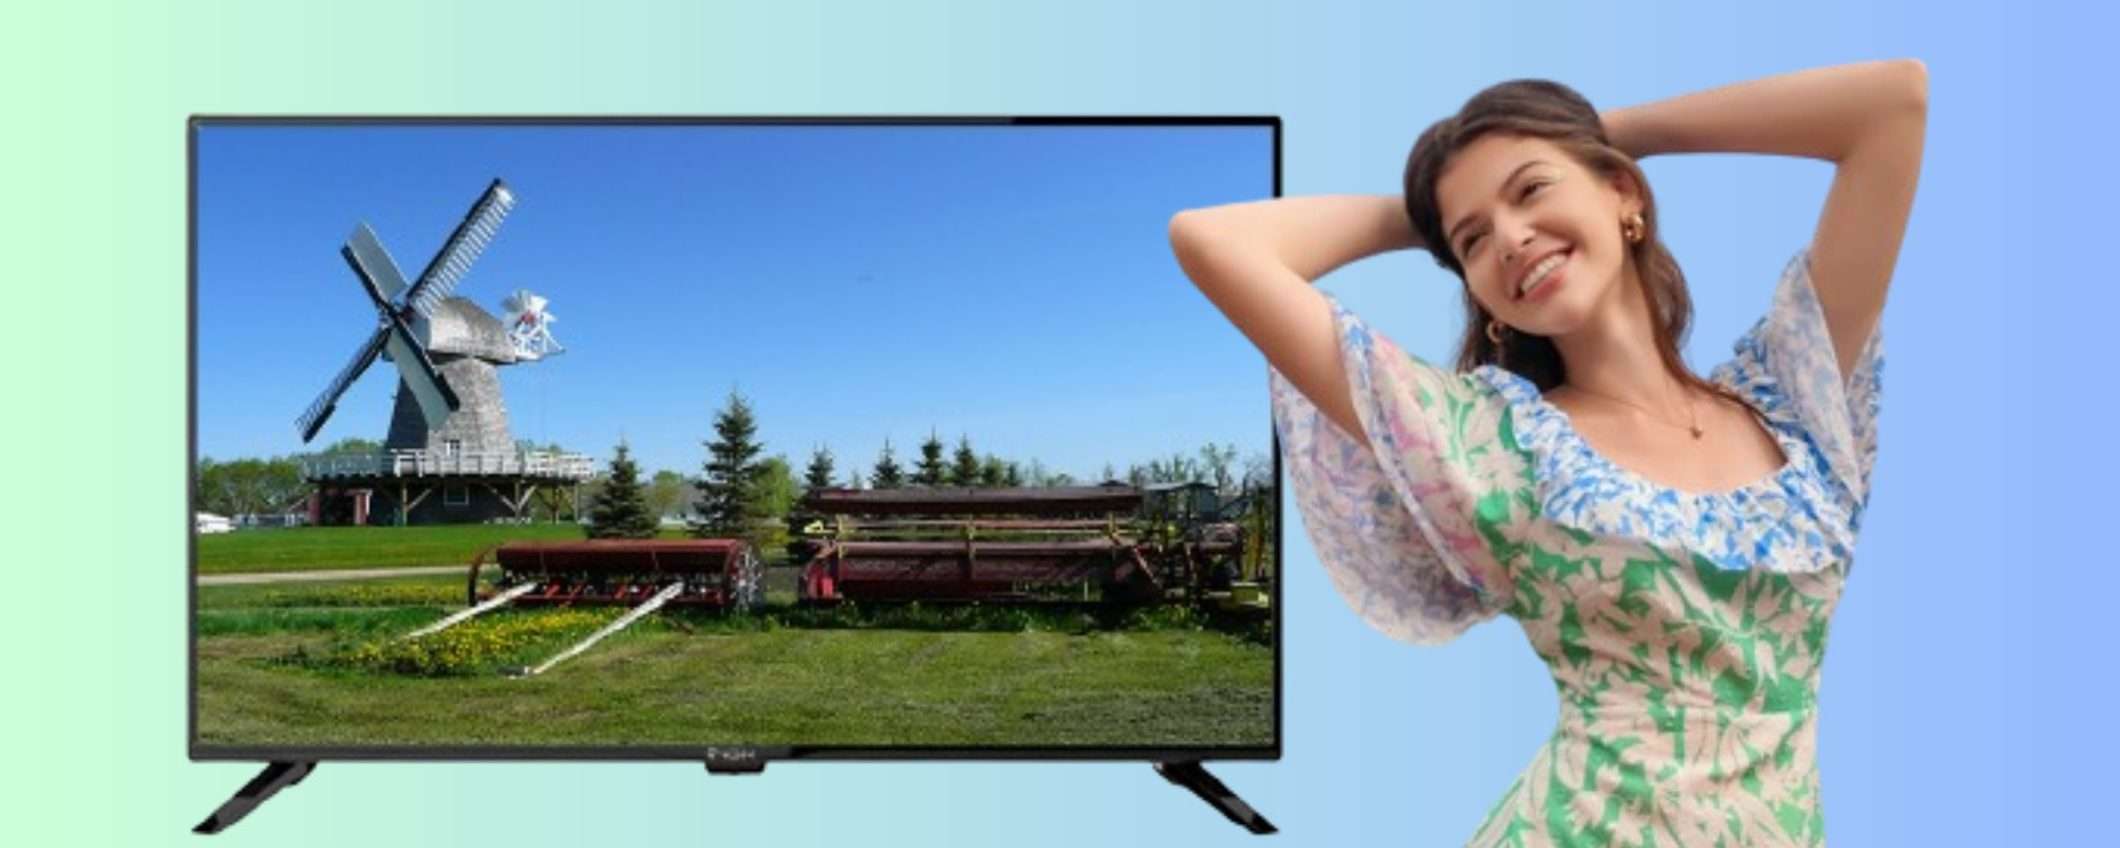 FOLLIA ePRICE: TV LED Full HD da 43 pollici a soli 199€